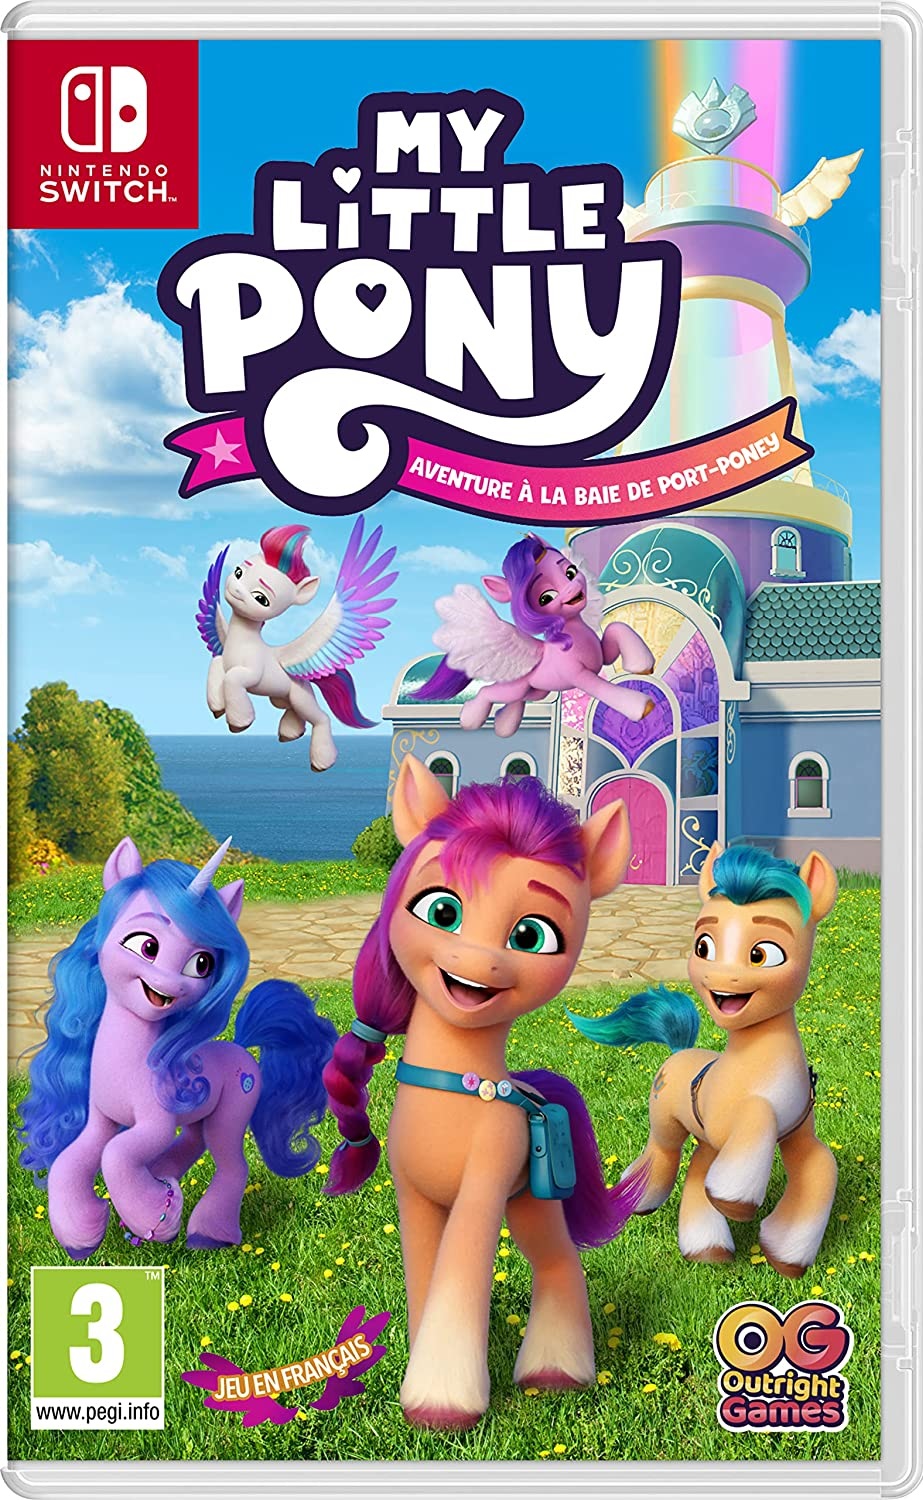 Retrouvez notre TEST : My Little Pony Aventures  Port-Poney